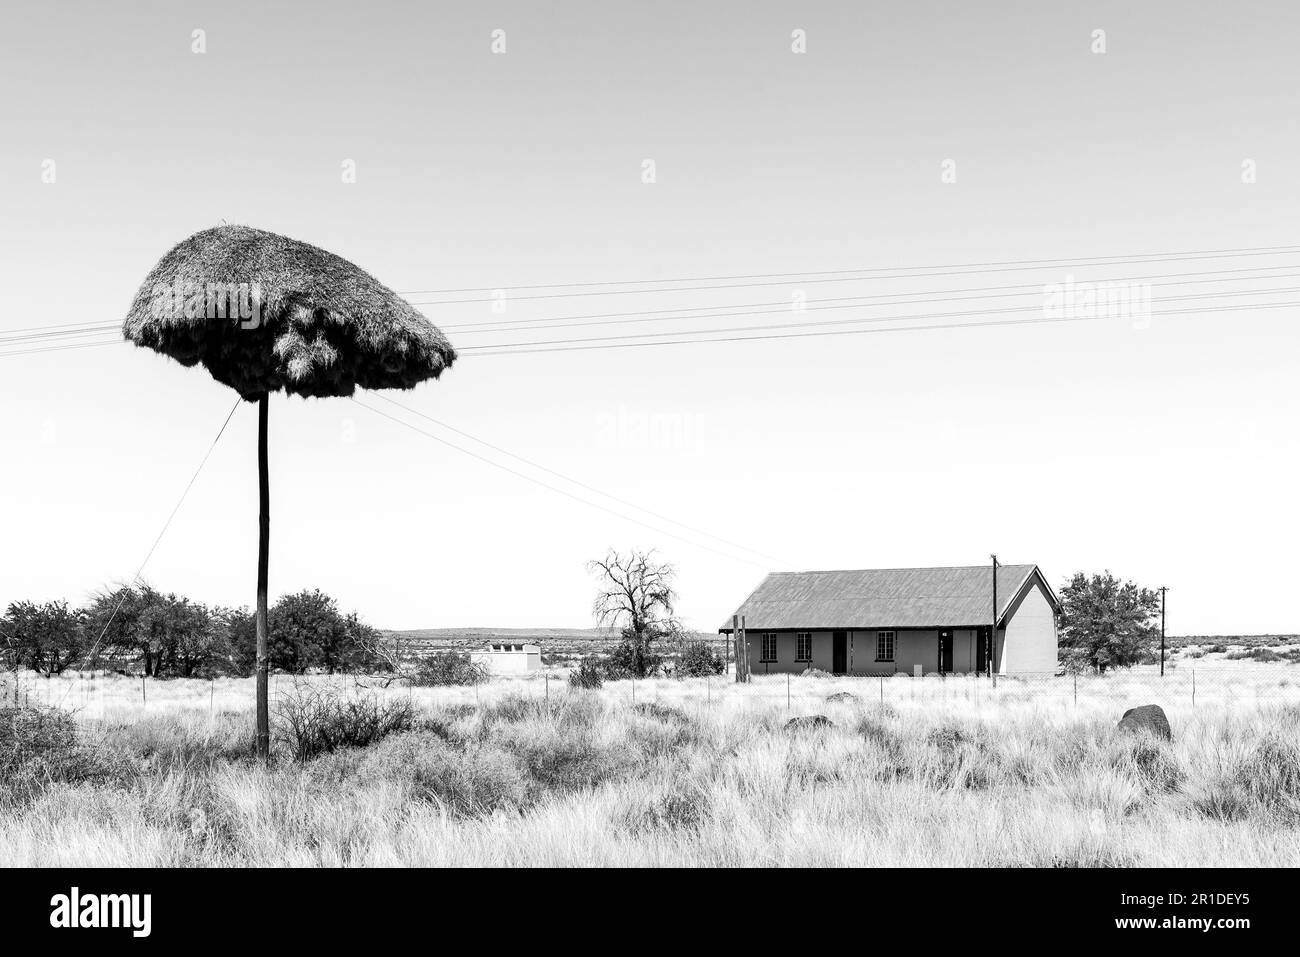 Putsonderwater, Afrique du Sud - Fév 28 2023: Une maison et un poteau téléphonique avec un nid d'oiseau cumunal près de Putsonderwater. Monochrome Banque D'Images